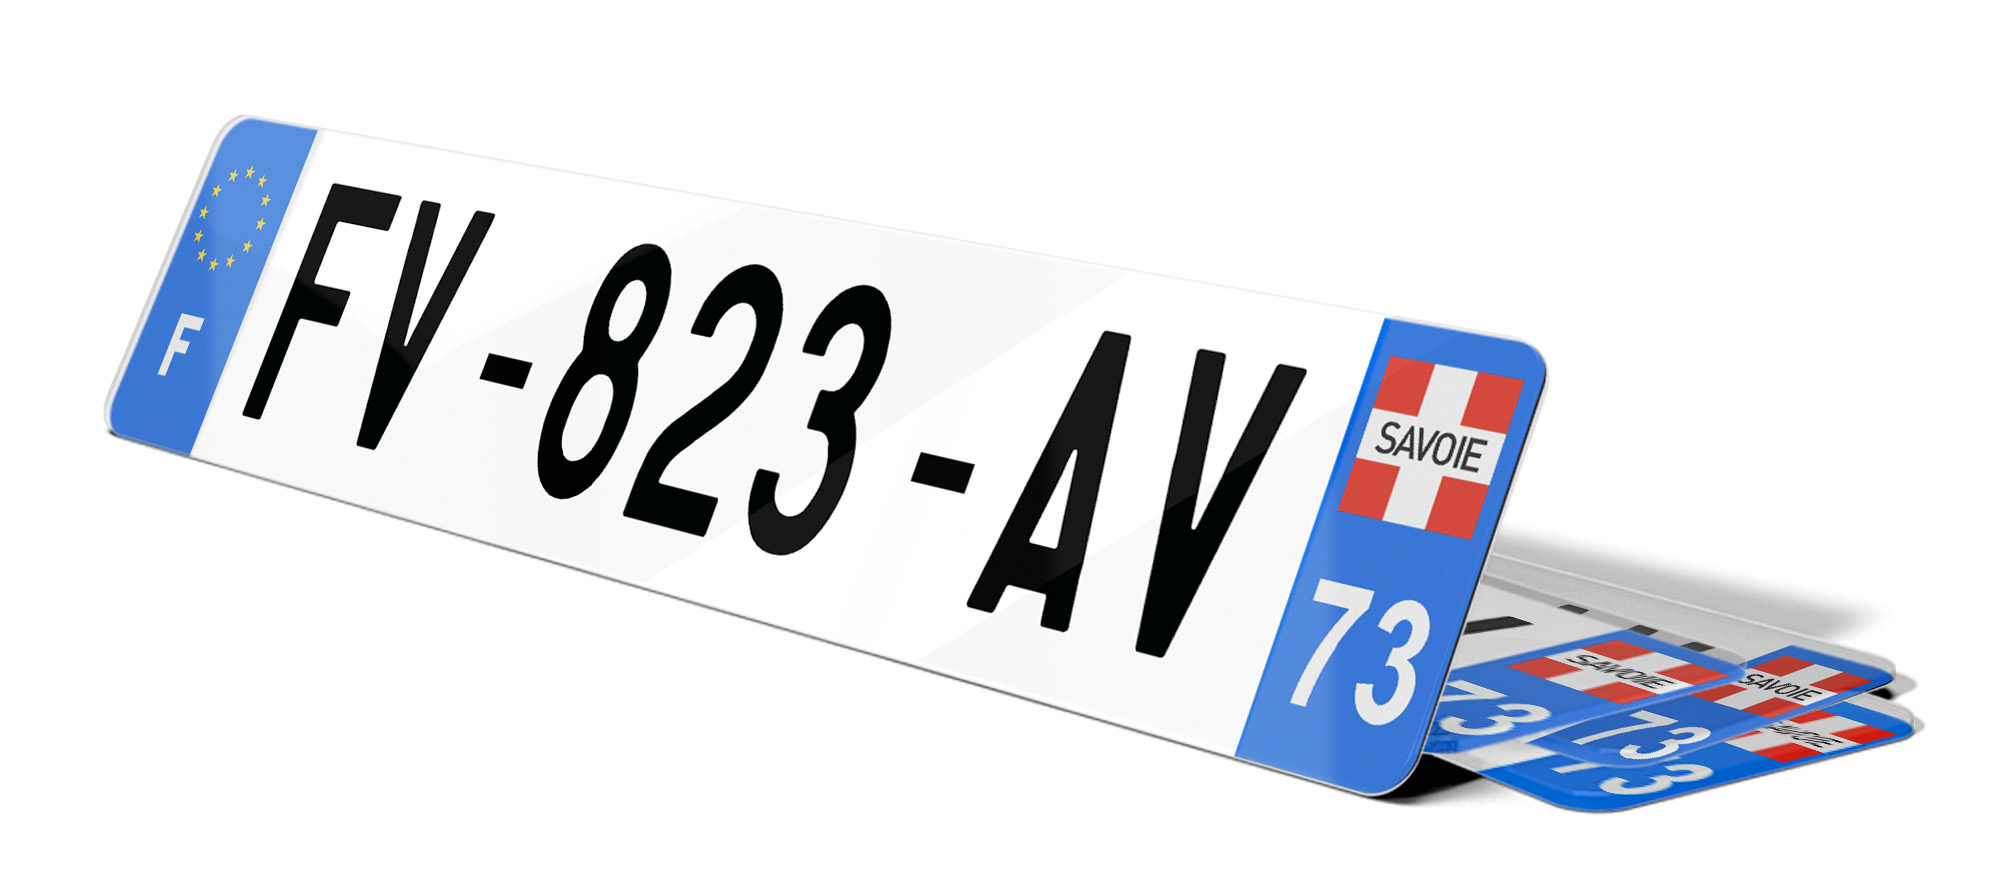 Autocollant Sticker Plaque d'immatriculation Moto 74 Croix de Savoie